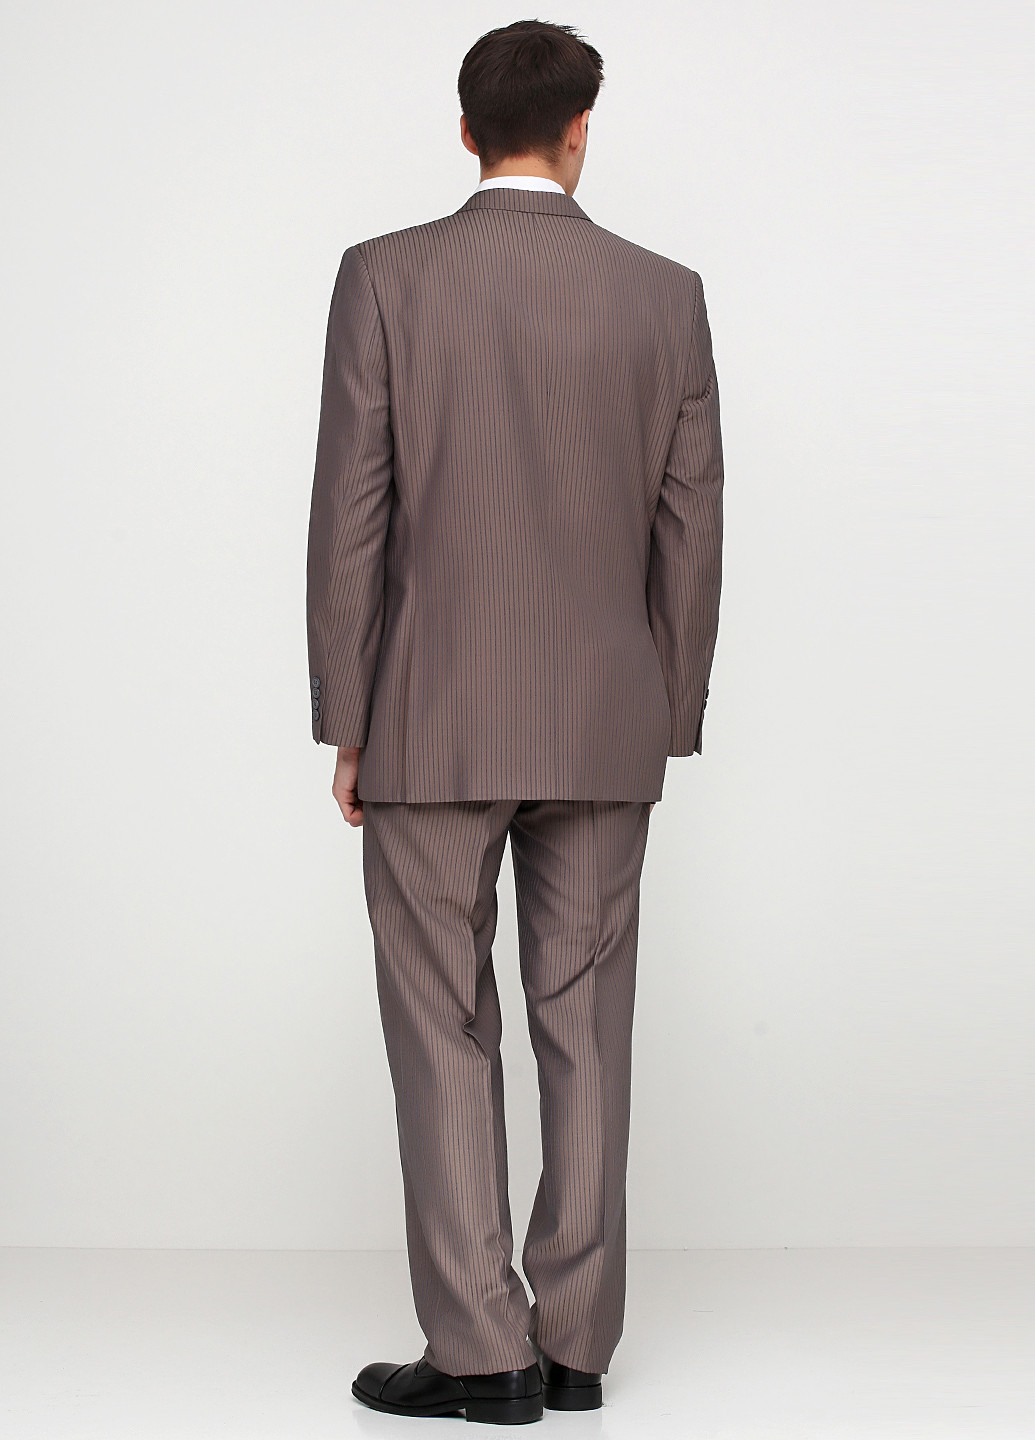 Блідо-коричневий демісезонний костюм (піджак, брюки) брючний Maestro Bravo